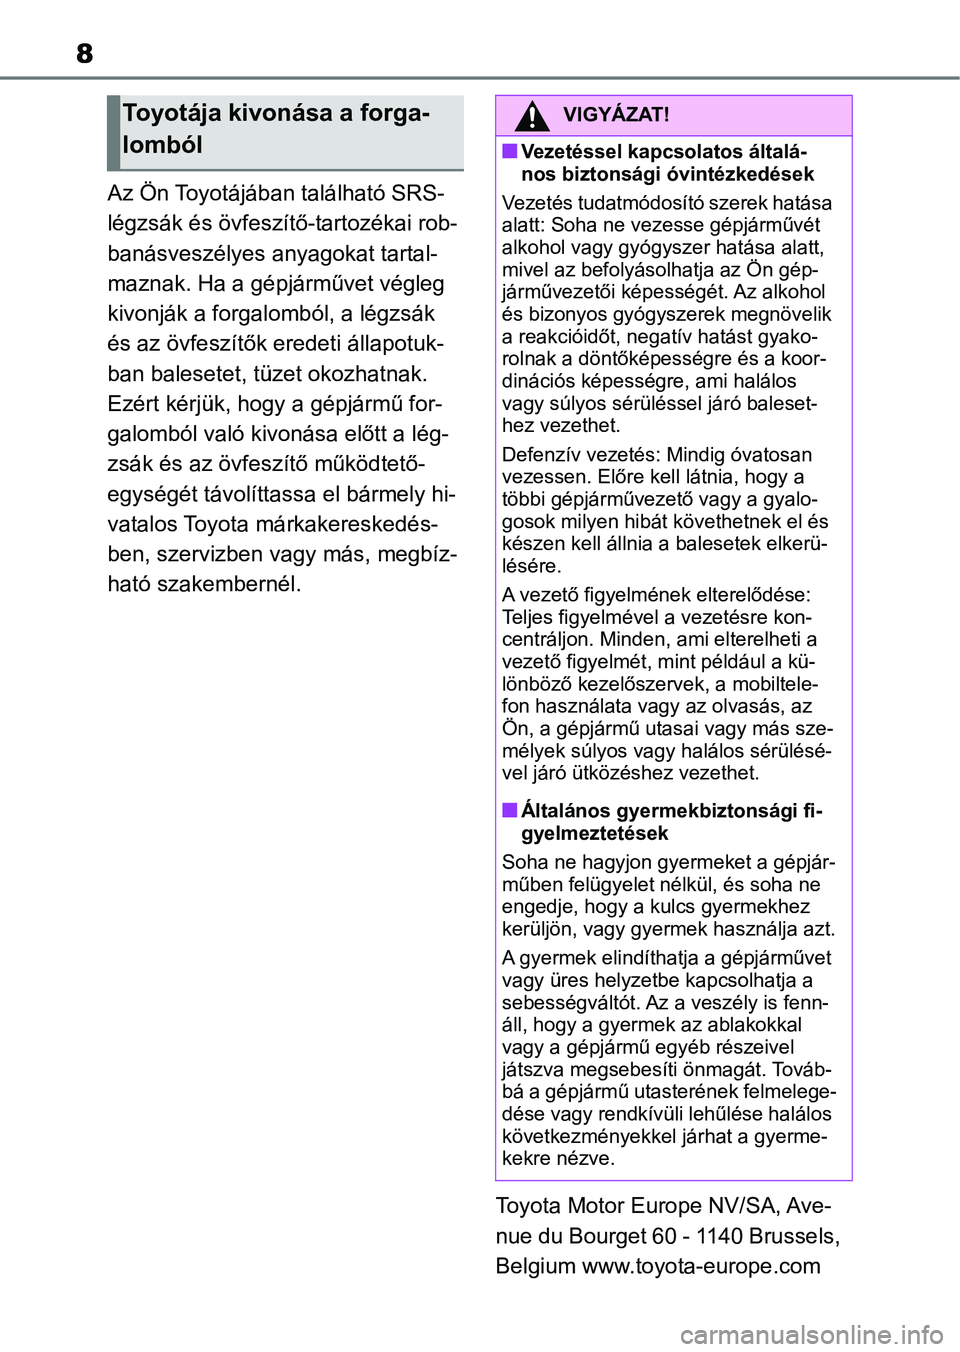 TOYOTA YARIS HATCHBACK 2020  Kezelési útmutató (in Hungarian) 8
Az Ön Toyotájában található SRS-
légzsák és övfeszítő-tartozékai rob-
banásveszélyes anyagokat tartal-
maznak. Ha a gépjárművet végleg 
kivonják a forgalomból, a légzsák 
és a